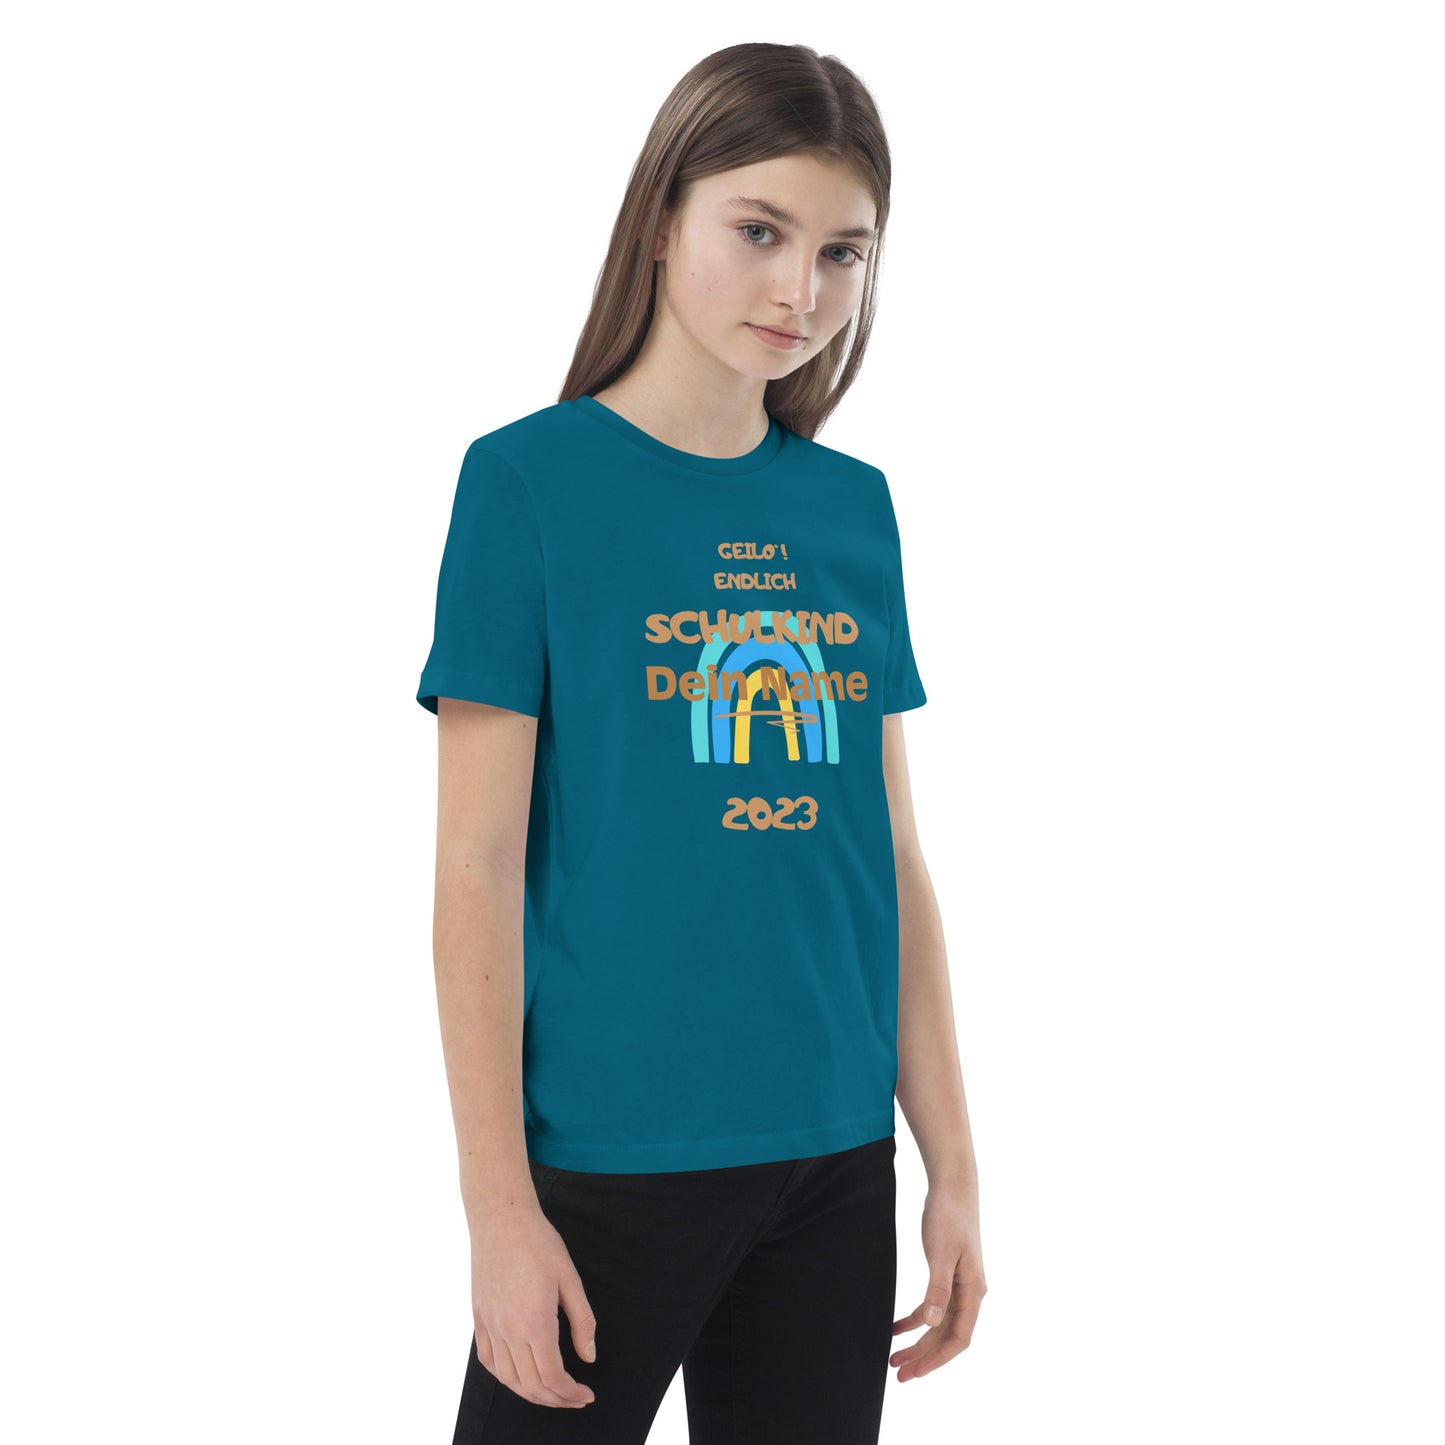 Bio-Baumwoll-T-Shirt für Kinder - Geilo, endlich Schulkind